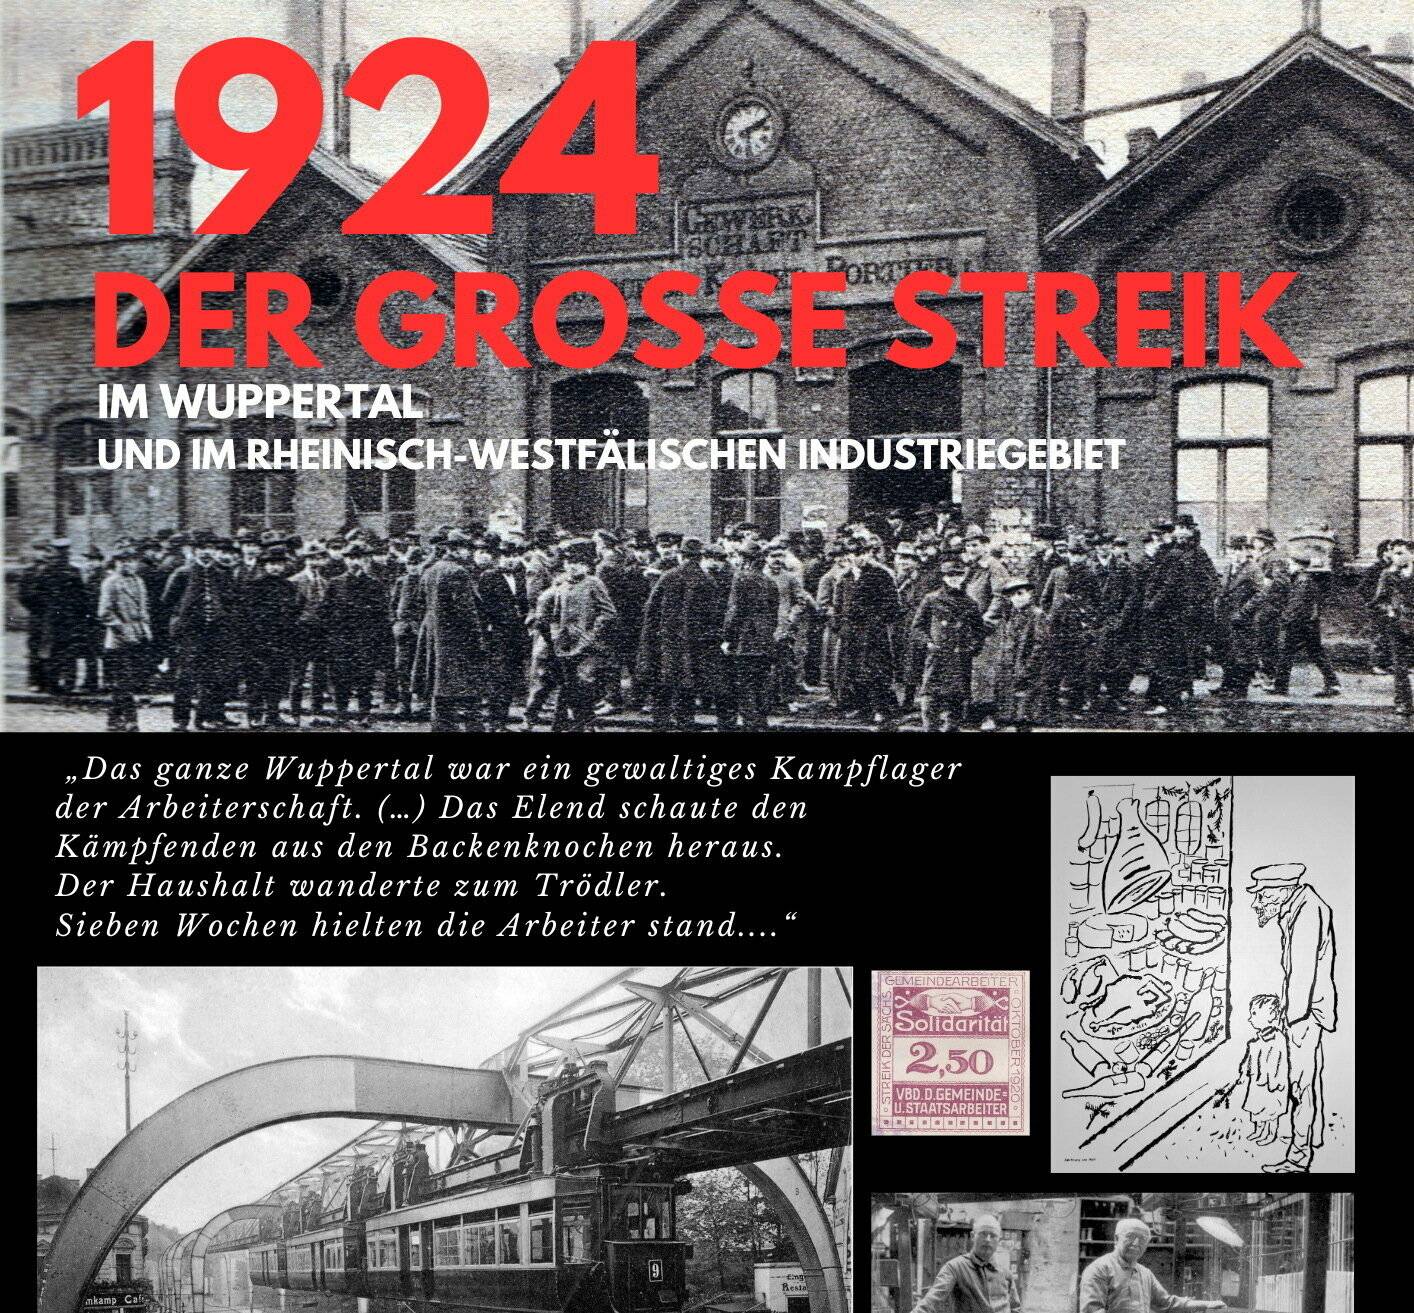 Der große Streik von 1924